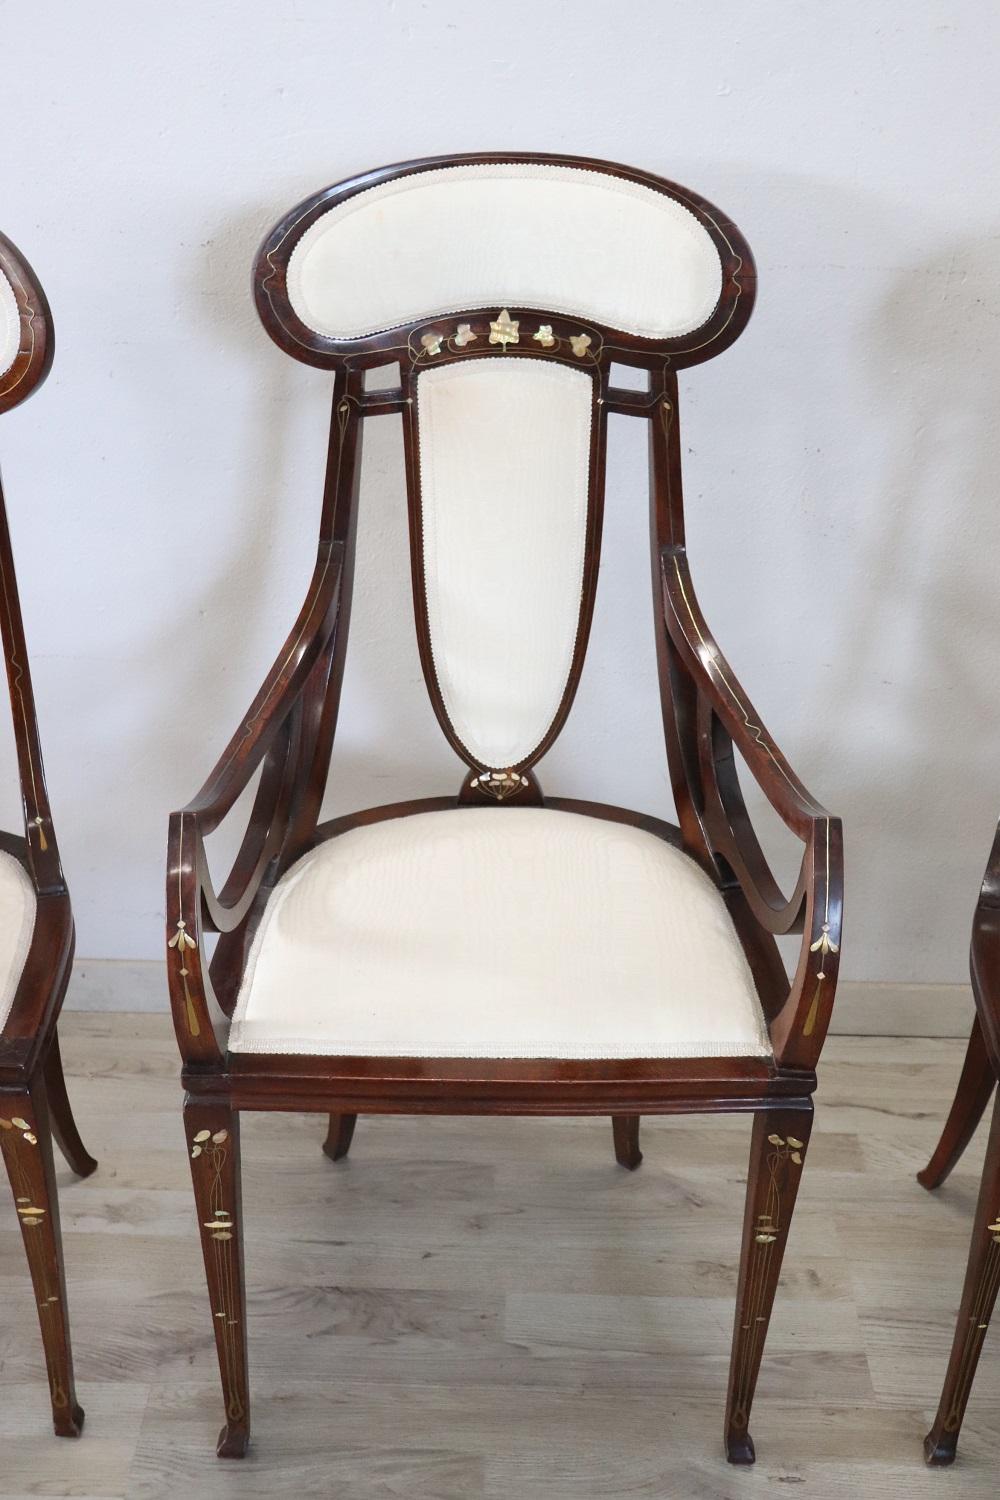 Seltenes italienisches Jugendstilset aus der Zeit um 1900:
1 Sessel
2 Stühle

Sehr seltene Stühle und Sessel von Carlo Zen, diese Stühle sind aus Nussbaum mit Intarsien aus Perlmutt und Messing und sind noch mit dem ursprünglichen Seidenstoff